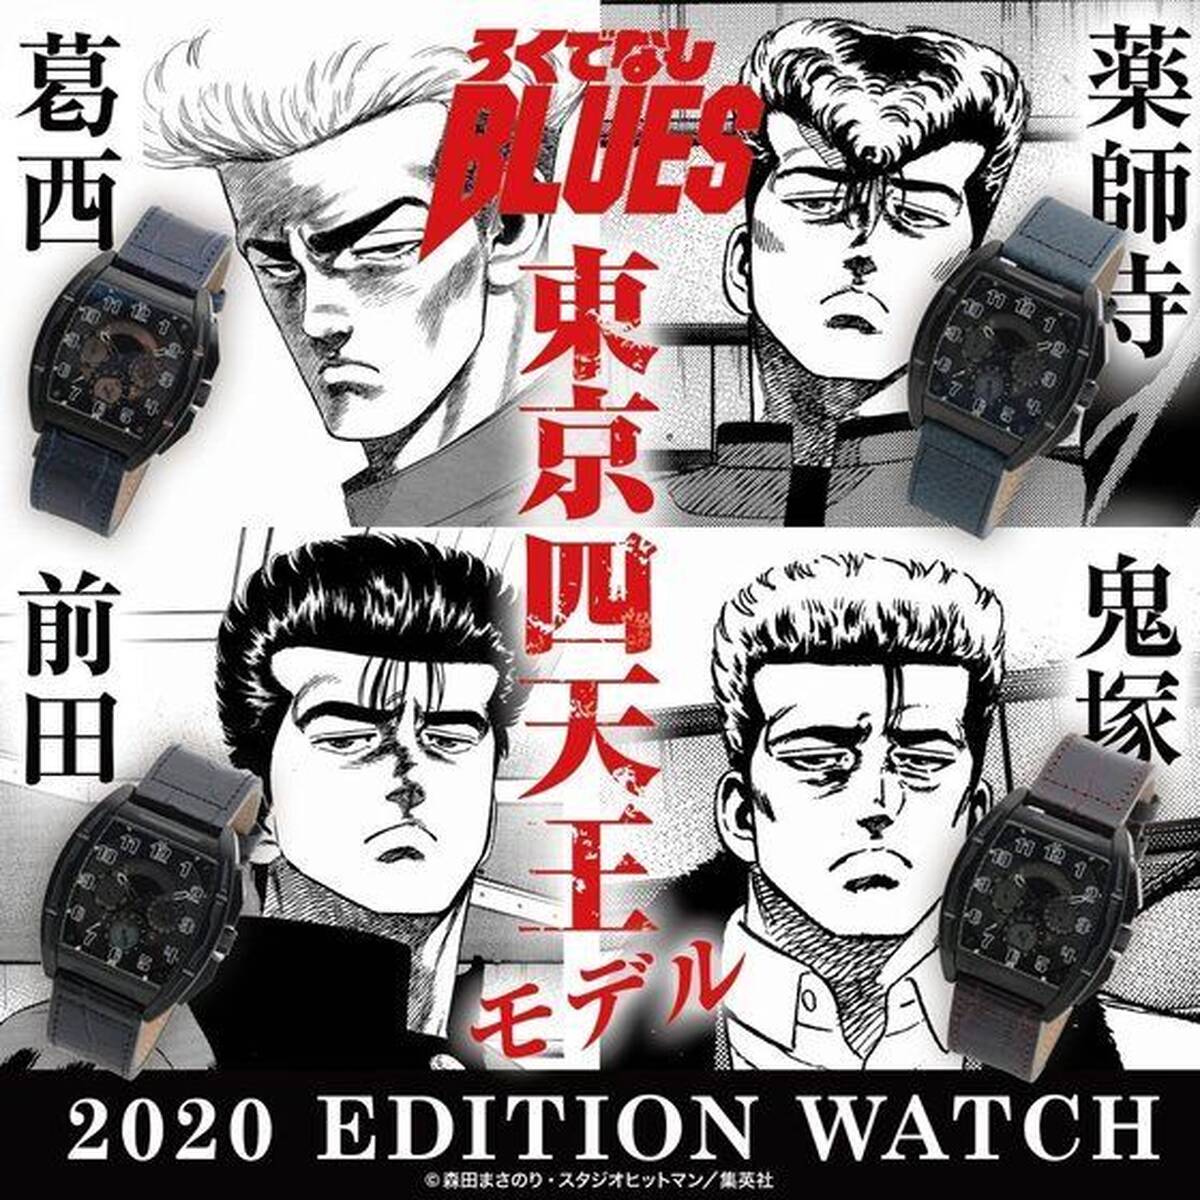 ろくでなしblues 東京四天王モデルの腕時計4種が発売 アキバ総研